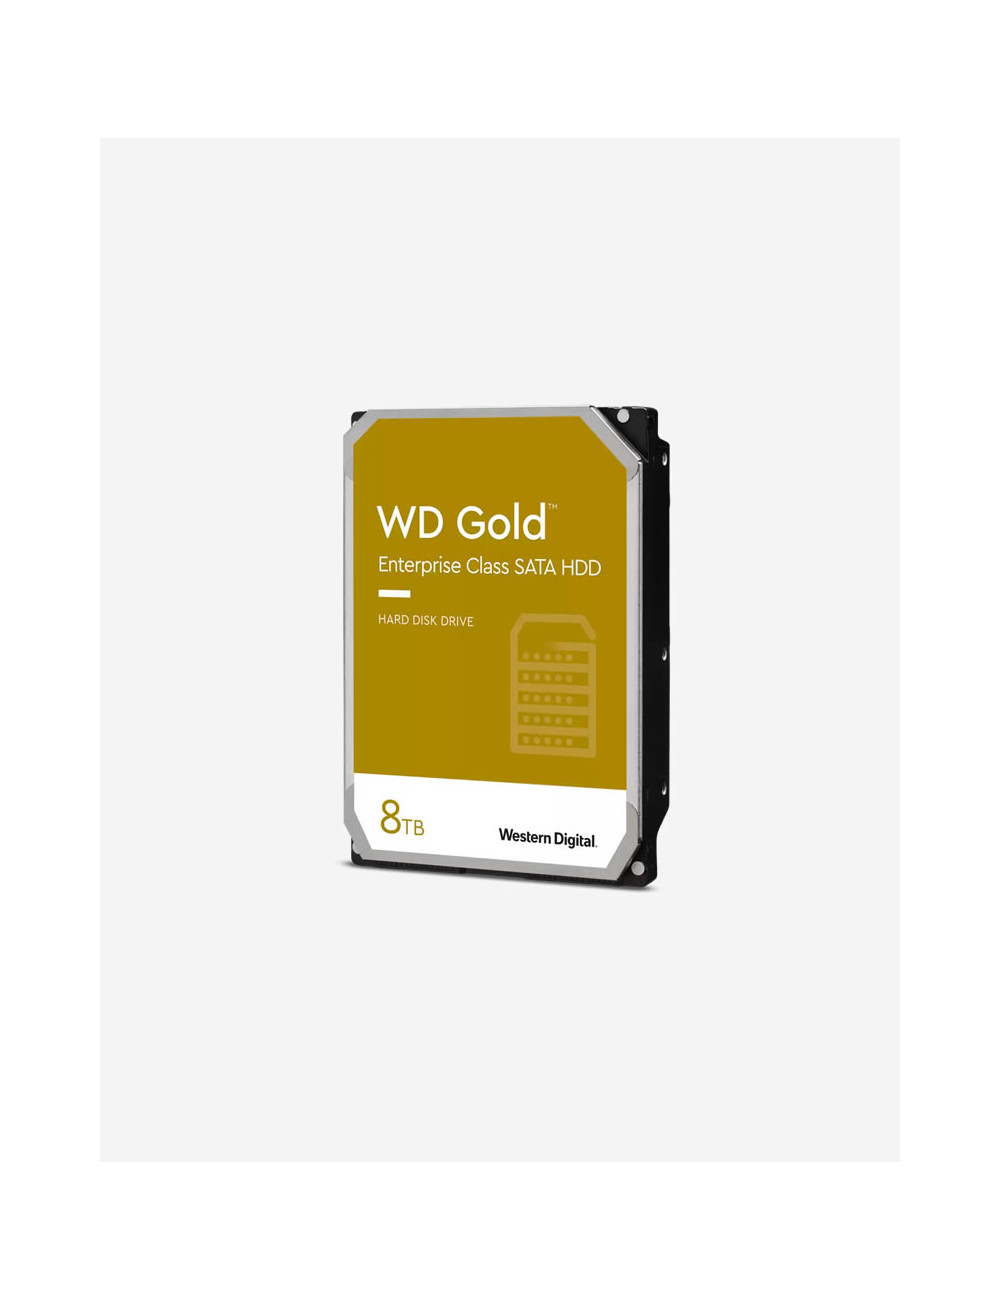 WD GOLD 8TB 3.5" HDD Drive